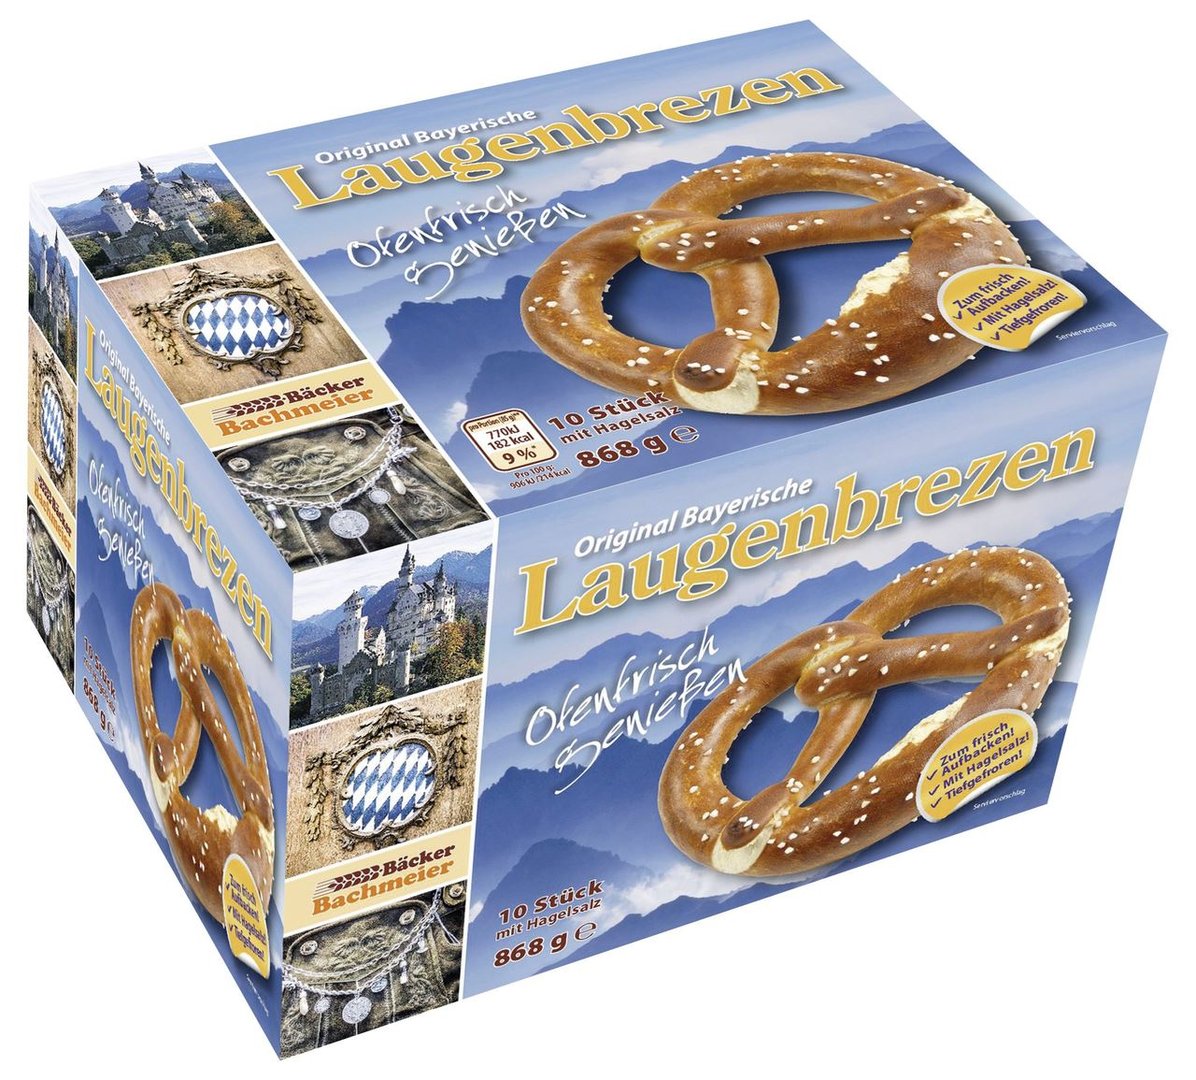 Bäcker Bachmeier - Laugenbrezen Teiglinge, tiefgefroren 10 Stück à 85 g & 18 g Hagelsalz - 9 x 868 g Karton